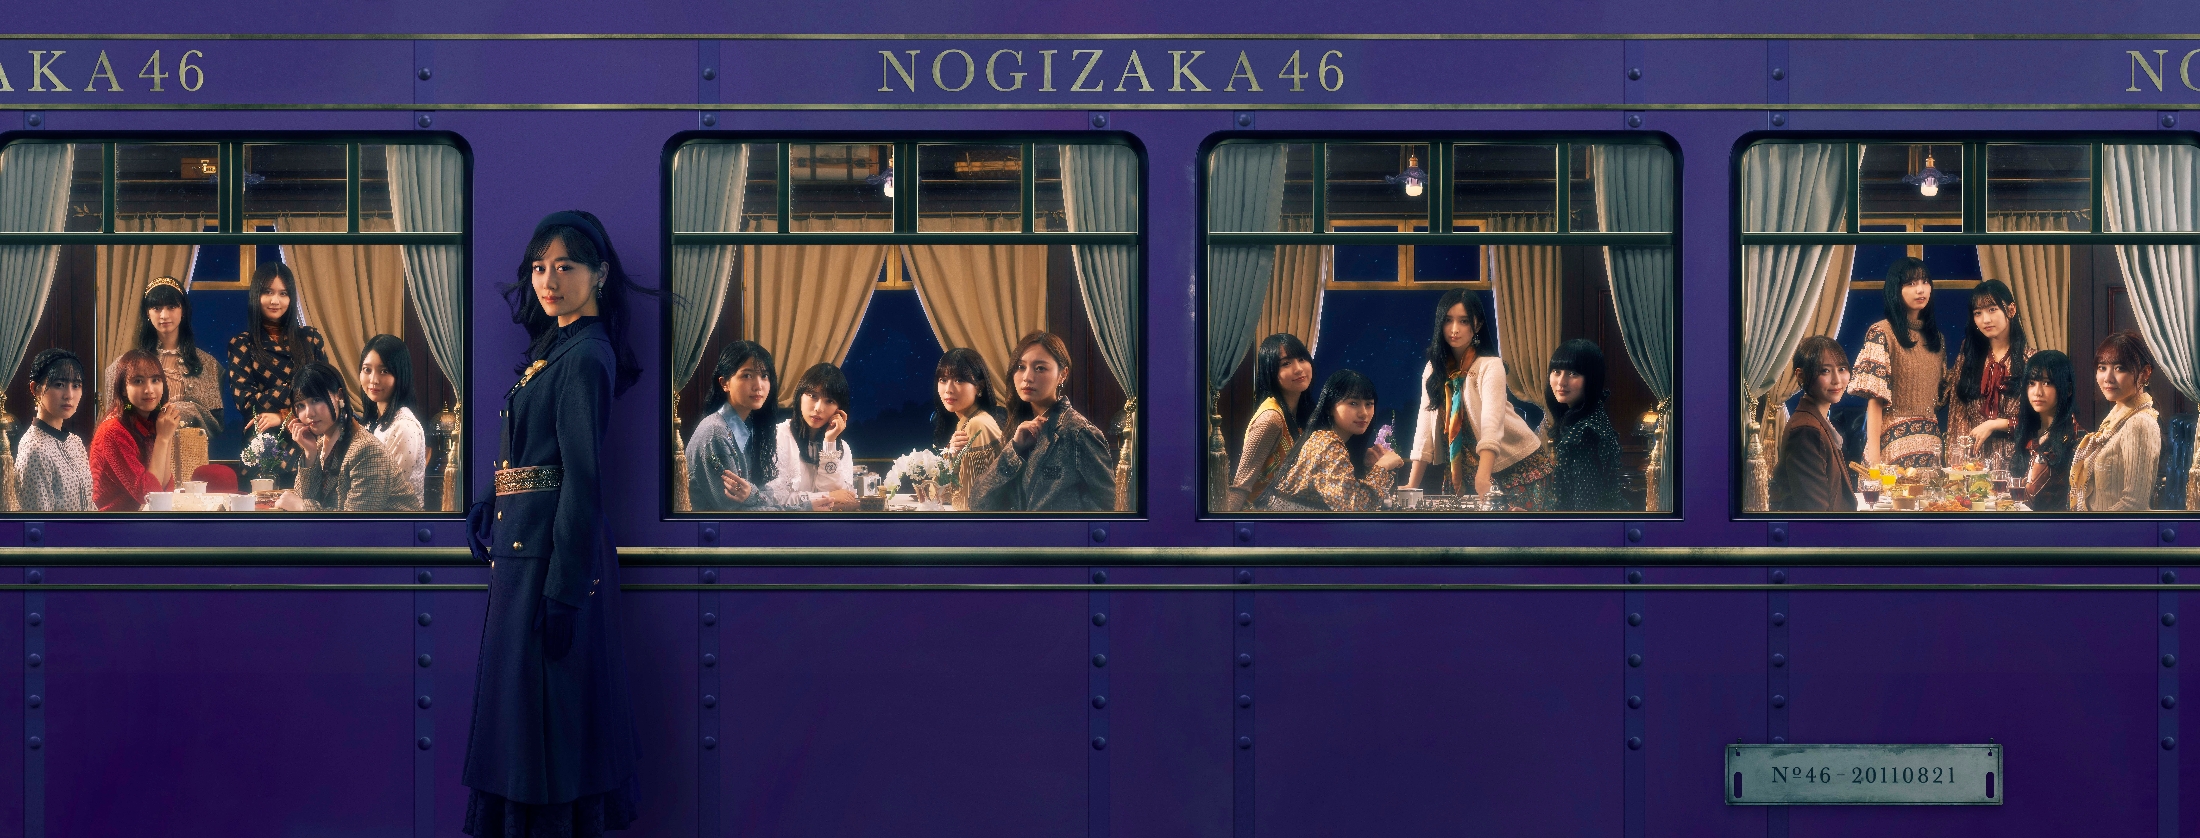 乃木坂46、35thシングル『チャンスは平等』収録曲公開 共通カップ 